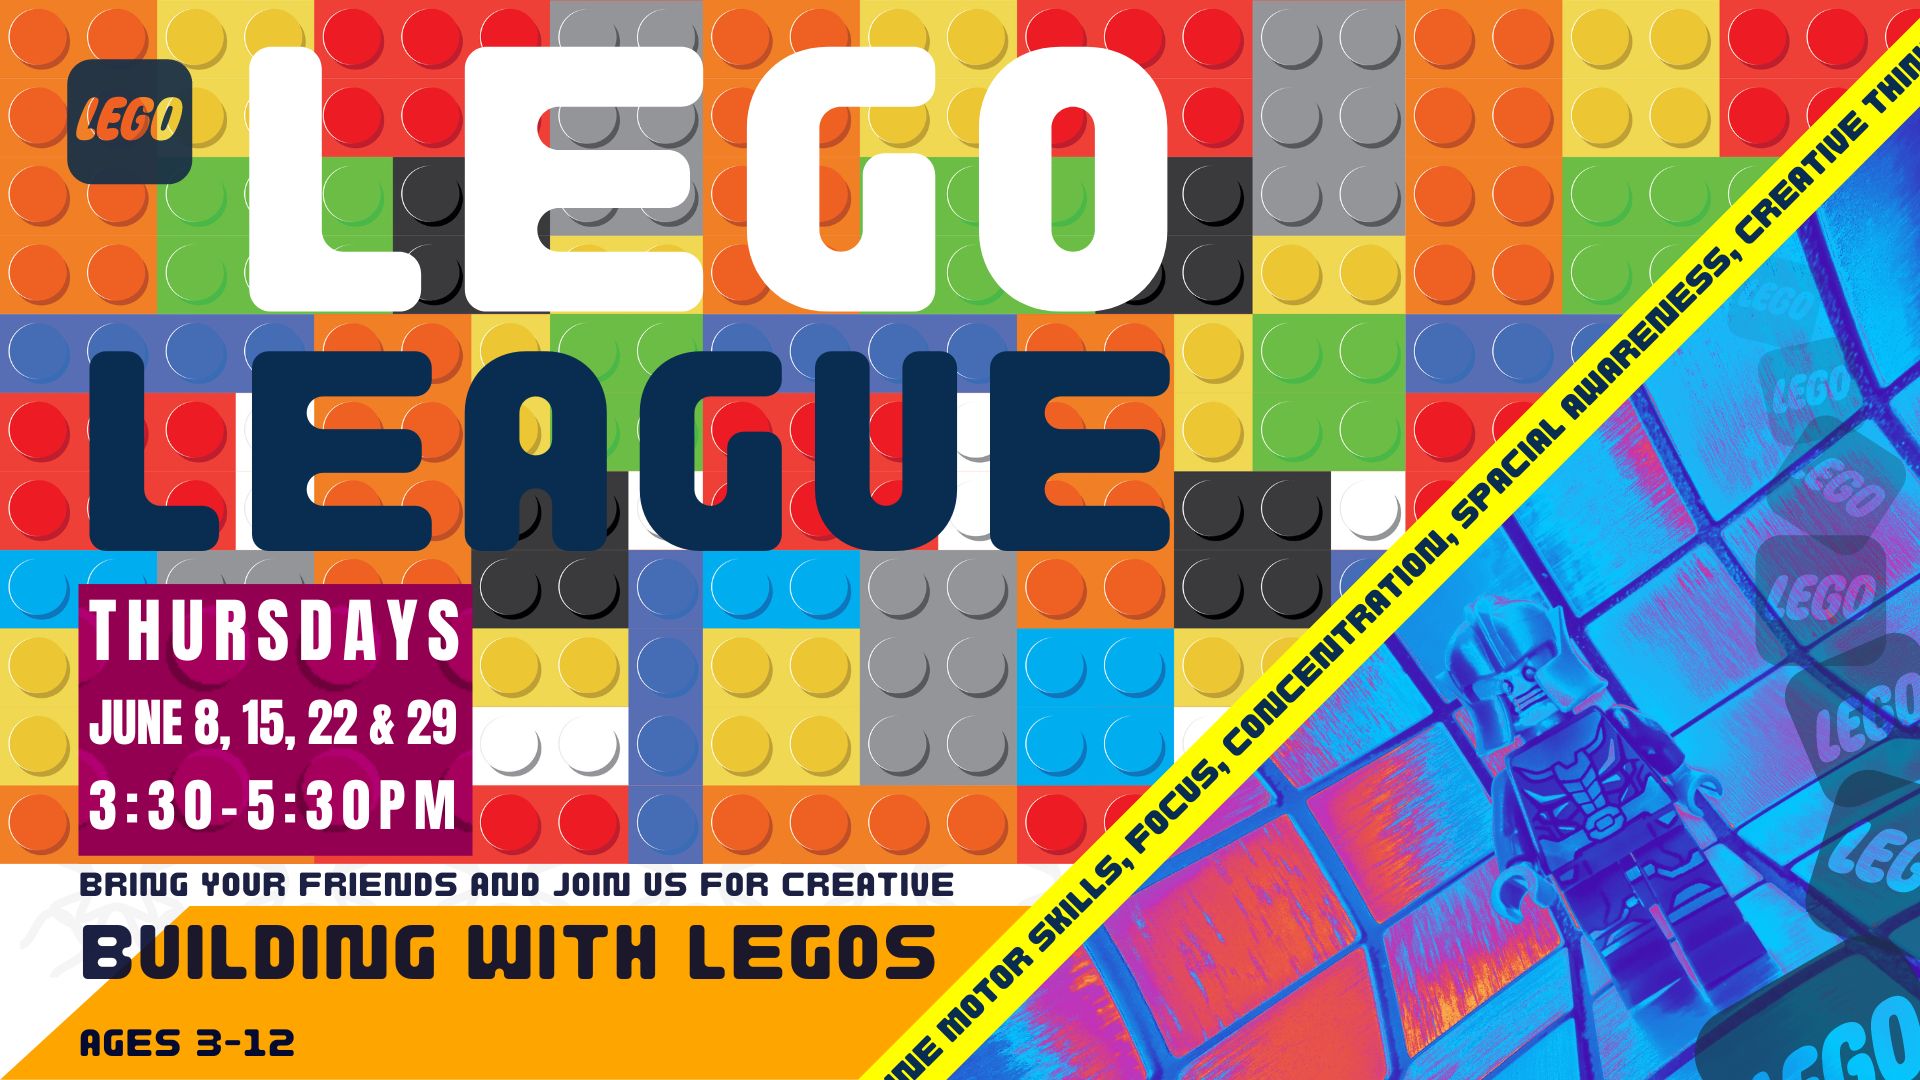 LEGO League